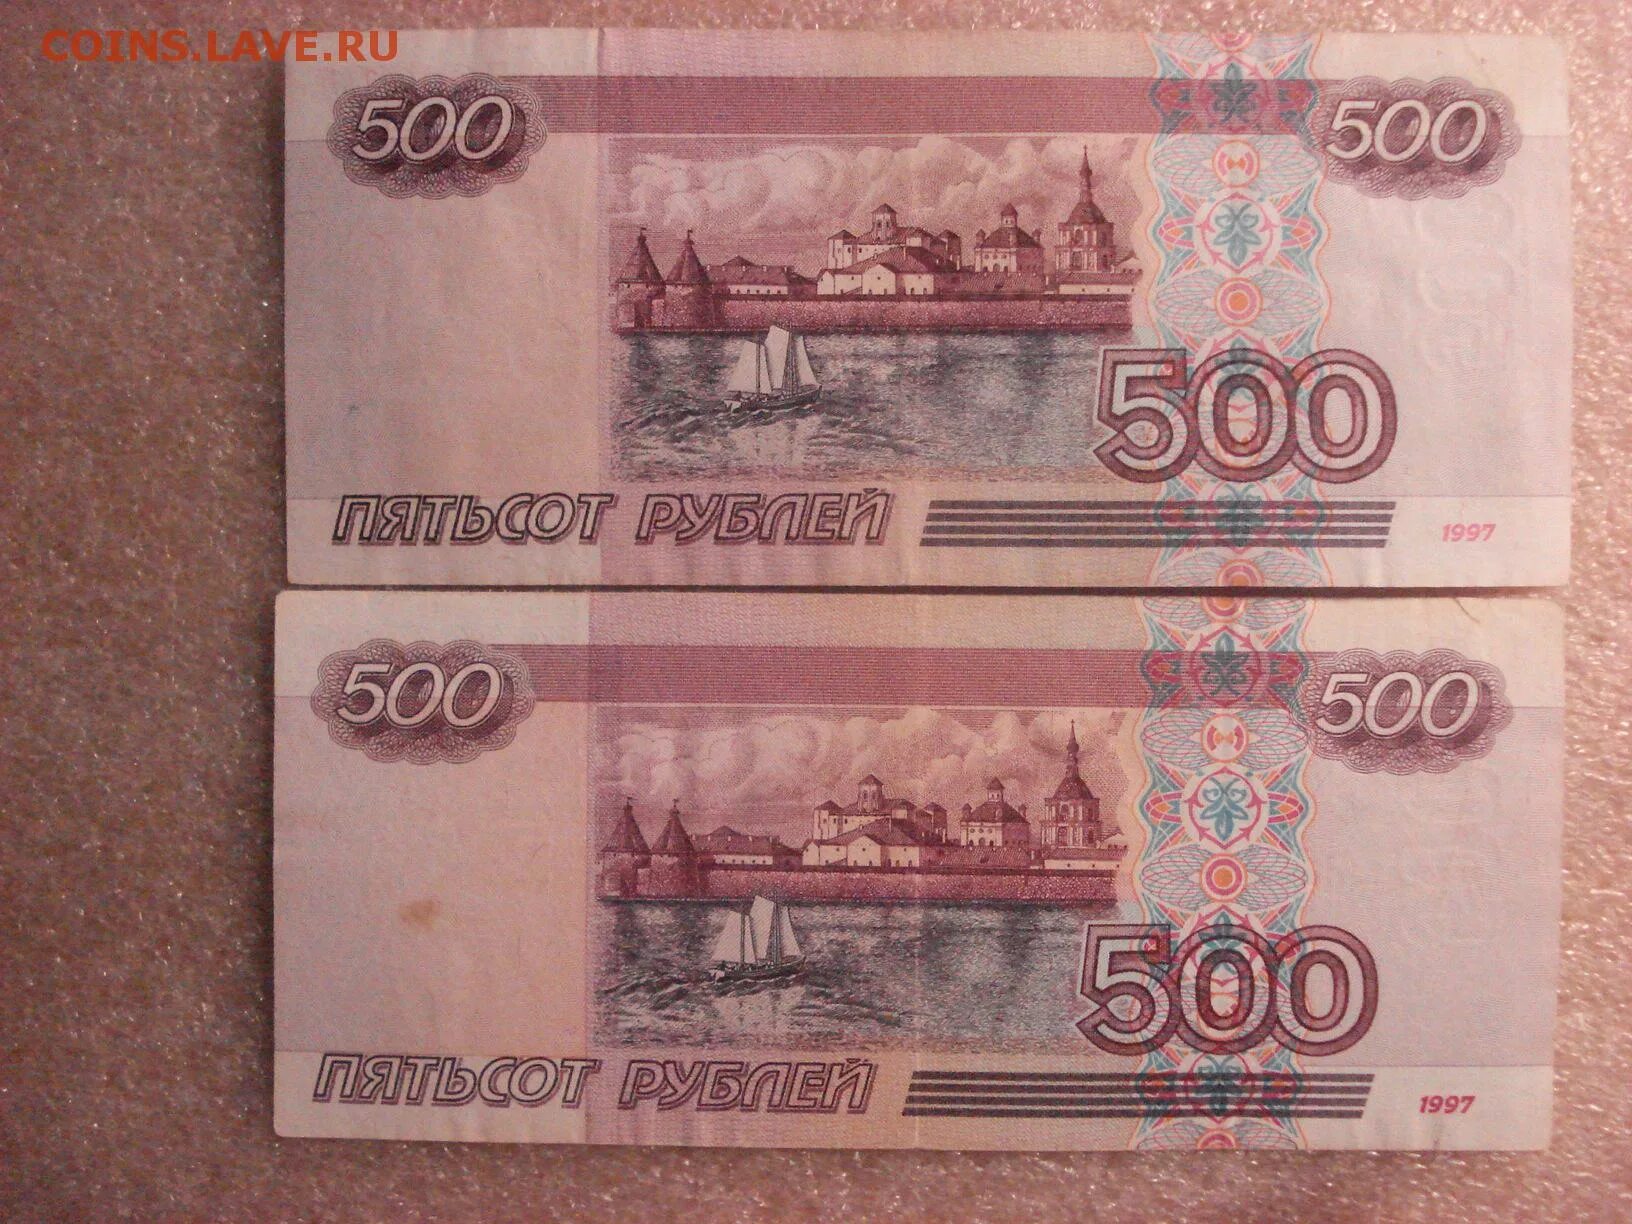 60 500 в рублях. 500р 1997 года без модификации. 500 И 1000 рублей. 500 Рублей 1997 без модификации.